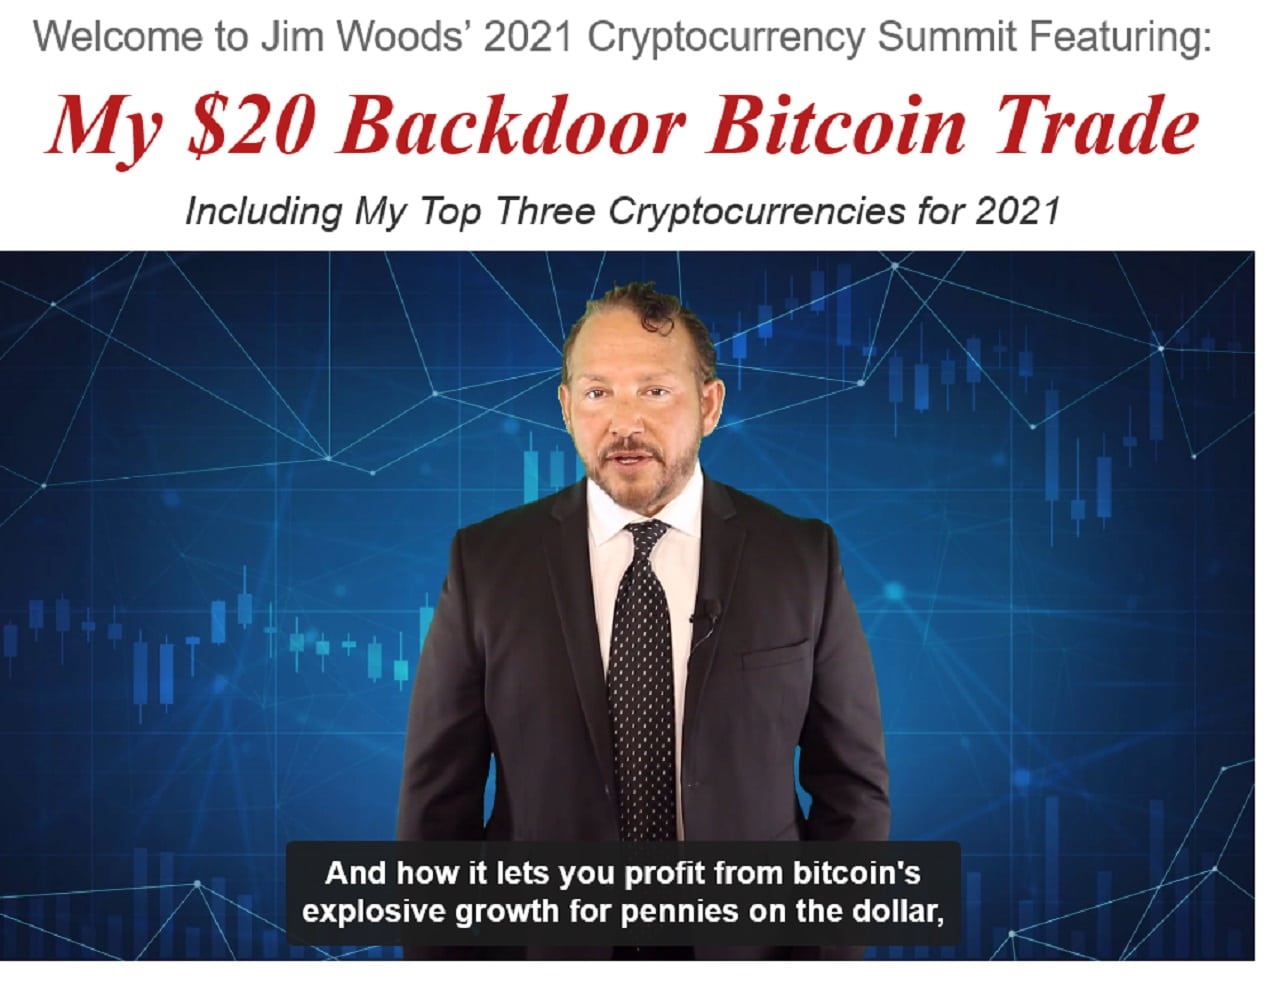 Jim Woods $20 Backdoor Bitcoin Trade